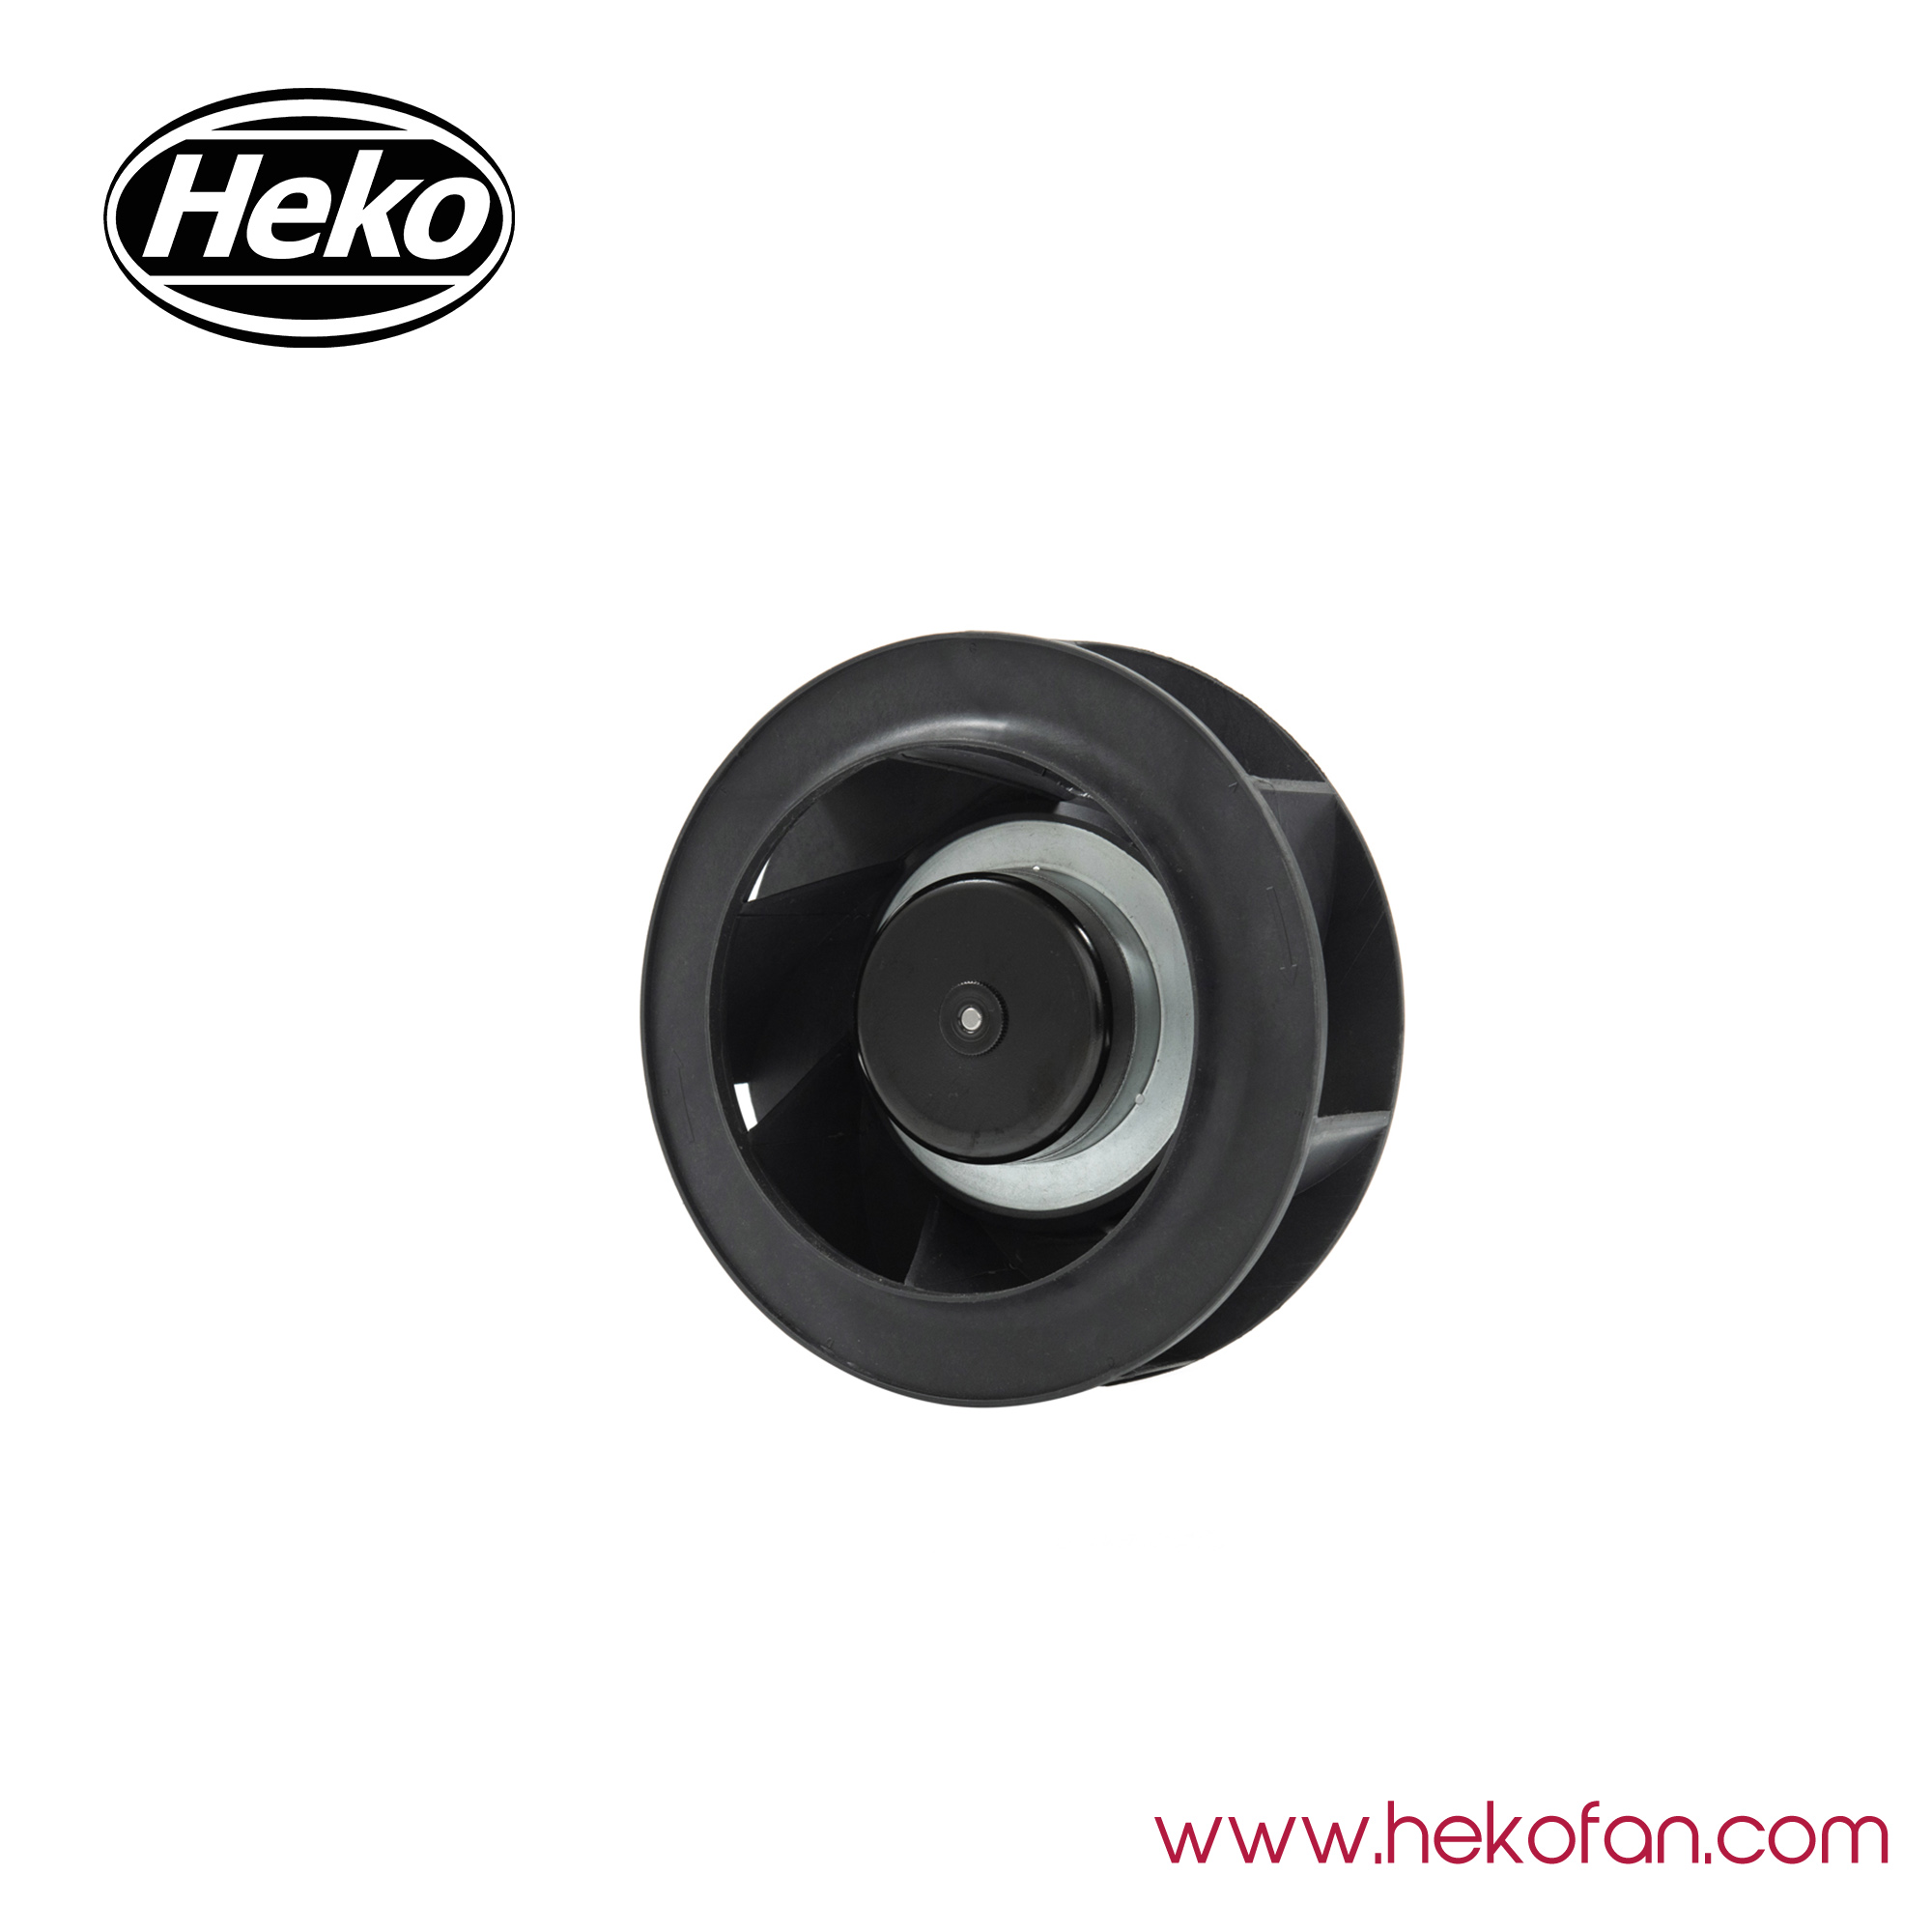 HEKO DC190mm Plastic Impeller High Pressure Centrifugal Fan 